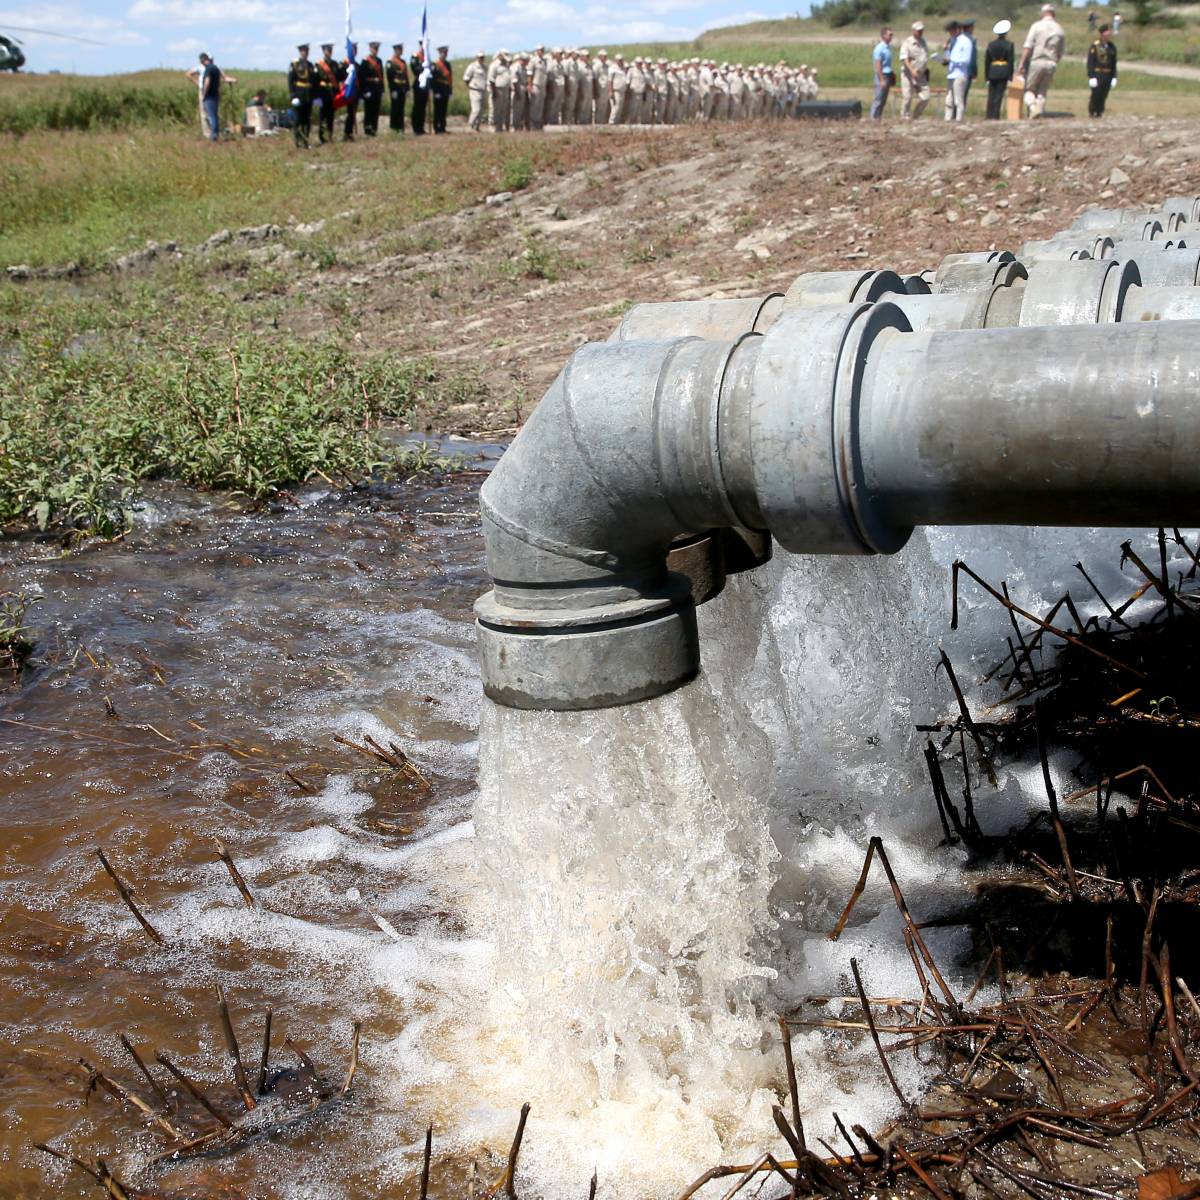 ООН заинтересовалась подачей воды в Крым